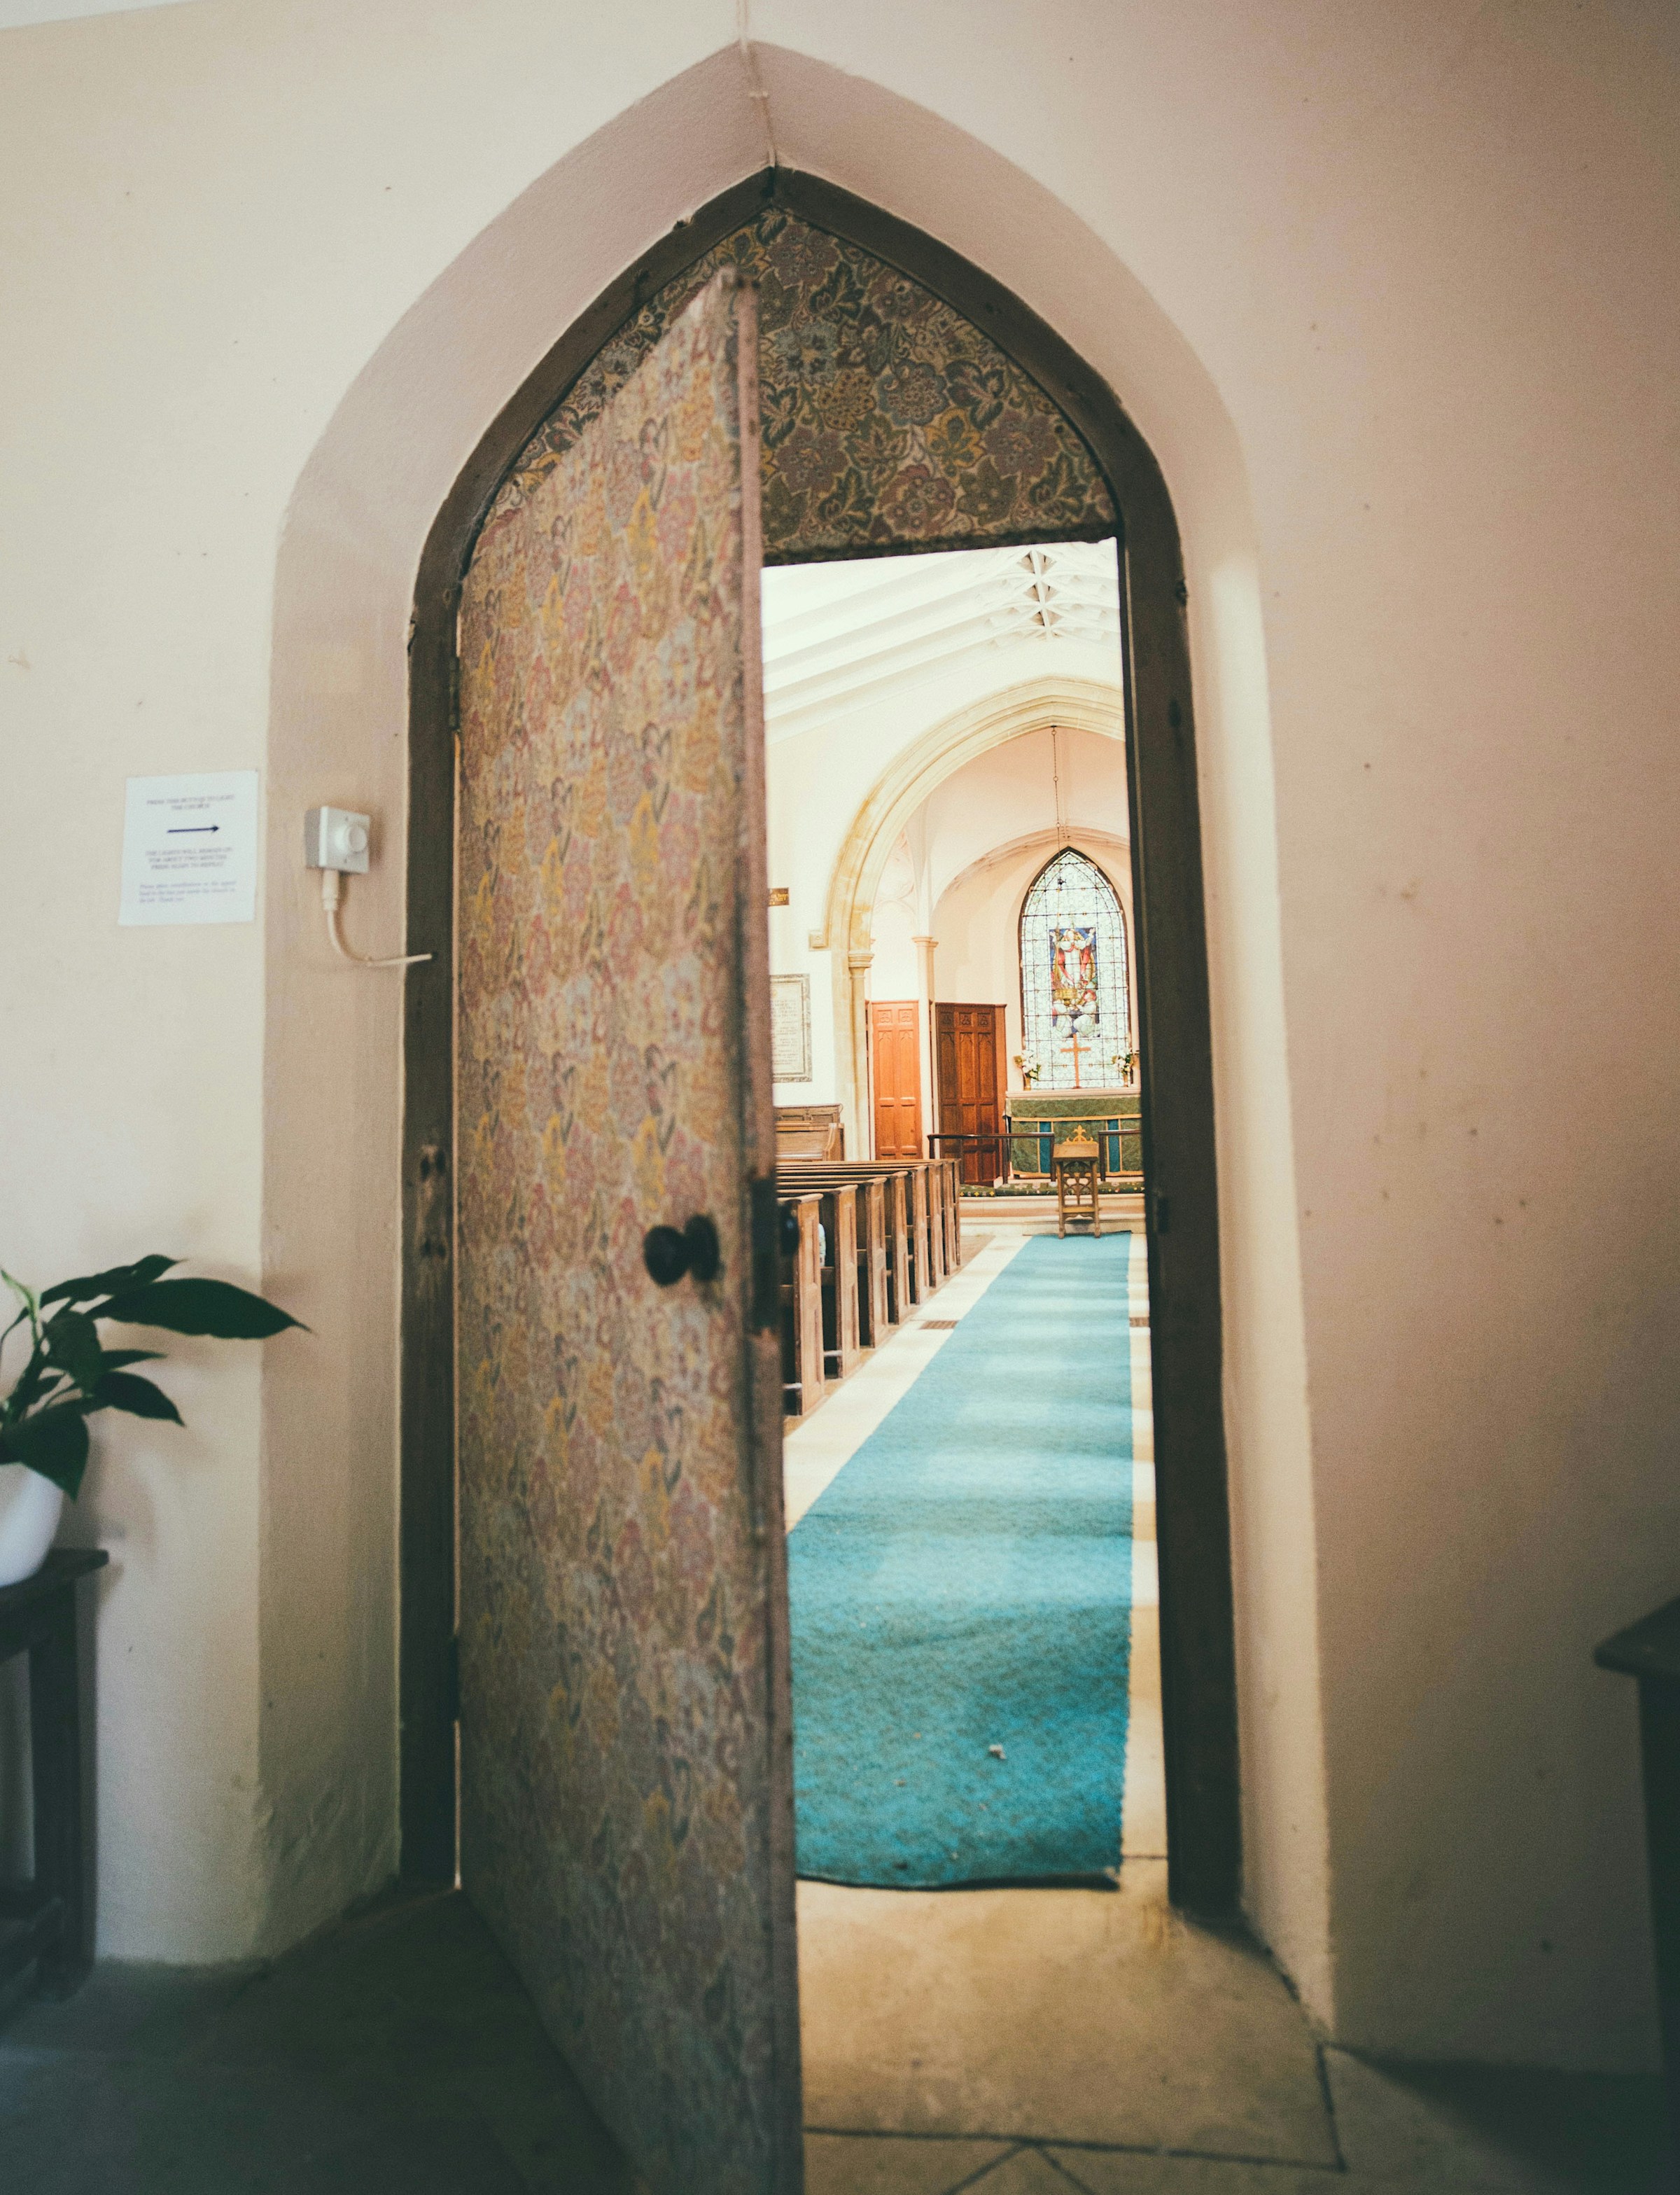 Eine offene Kirchentür | Quelle: Pexels